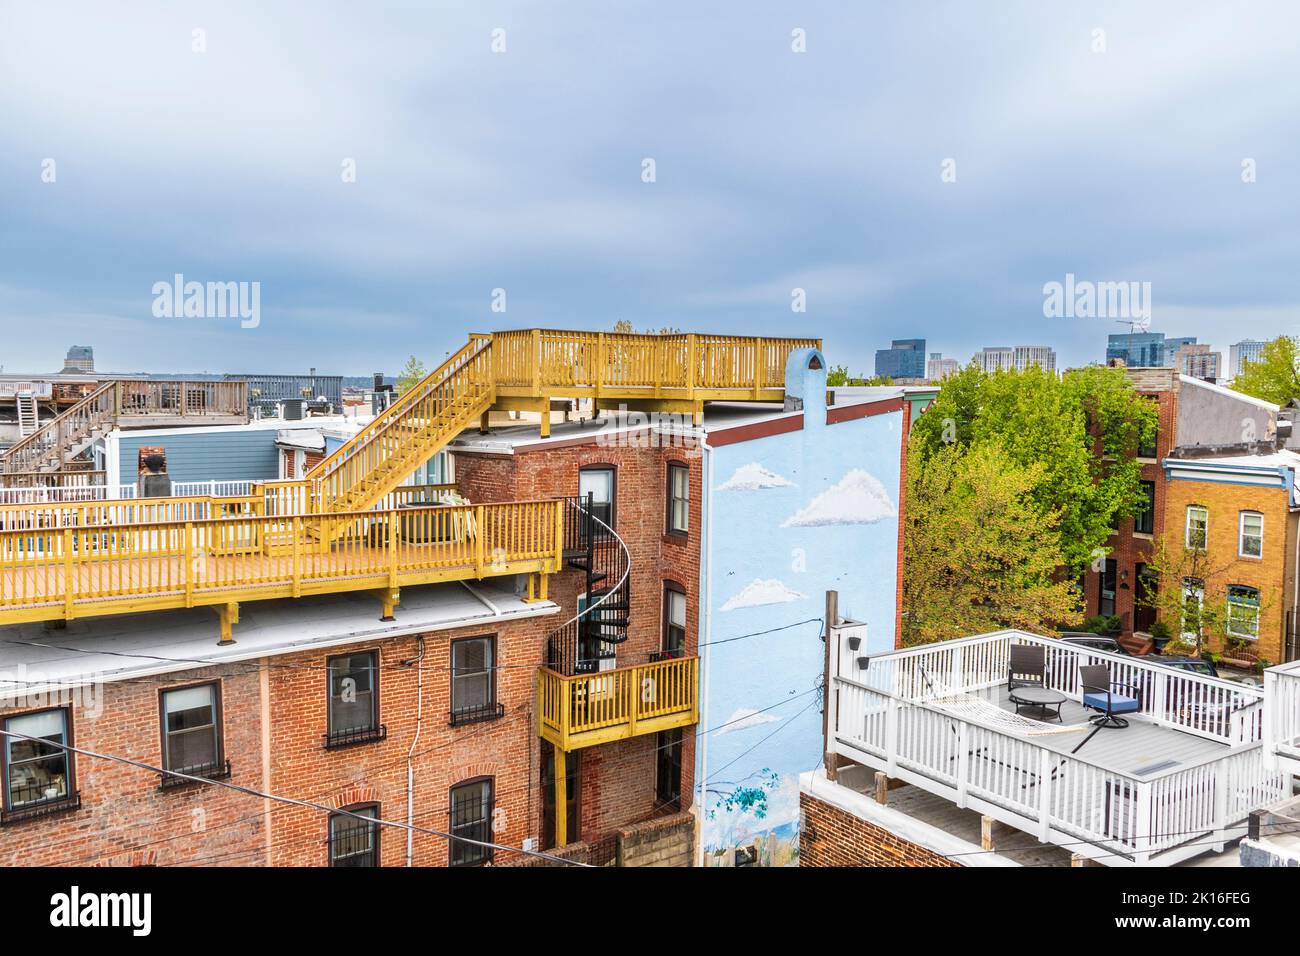 Baltimore, Maryland, las famosas casas de la fila están a menudo cubiertas con cubiertas de tejado como jóvenes profesionales en masa a estas casas históricas. Foto de stock